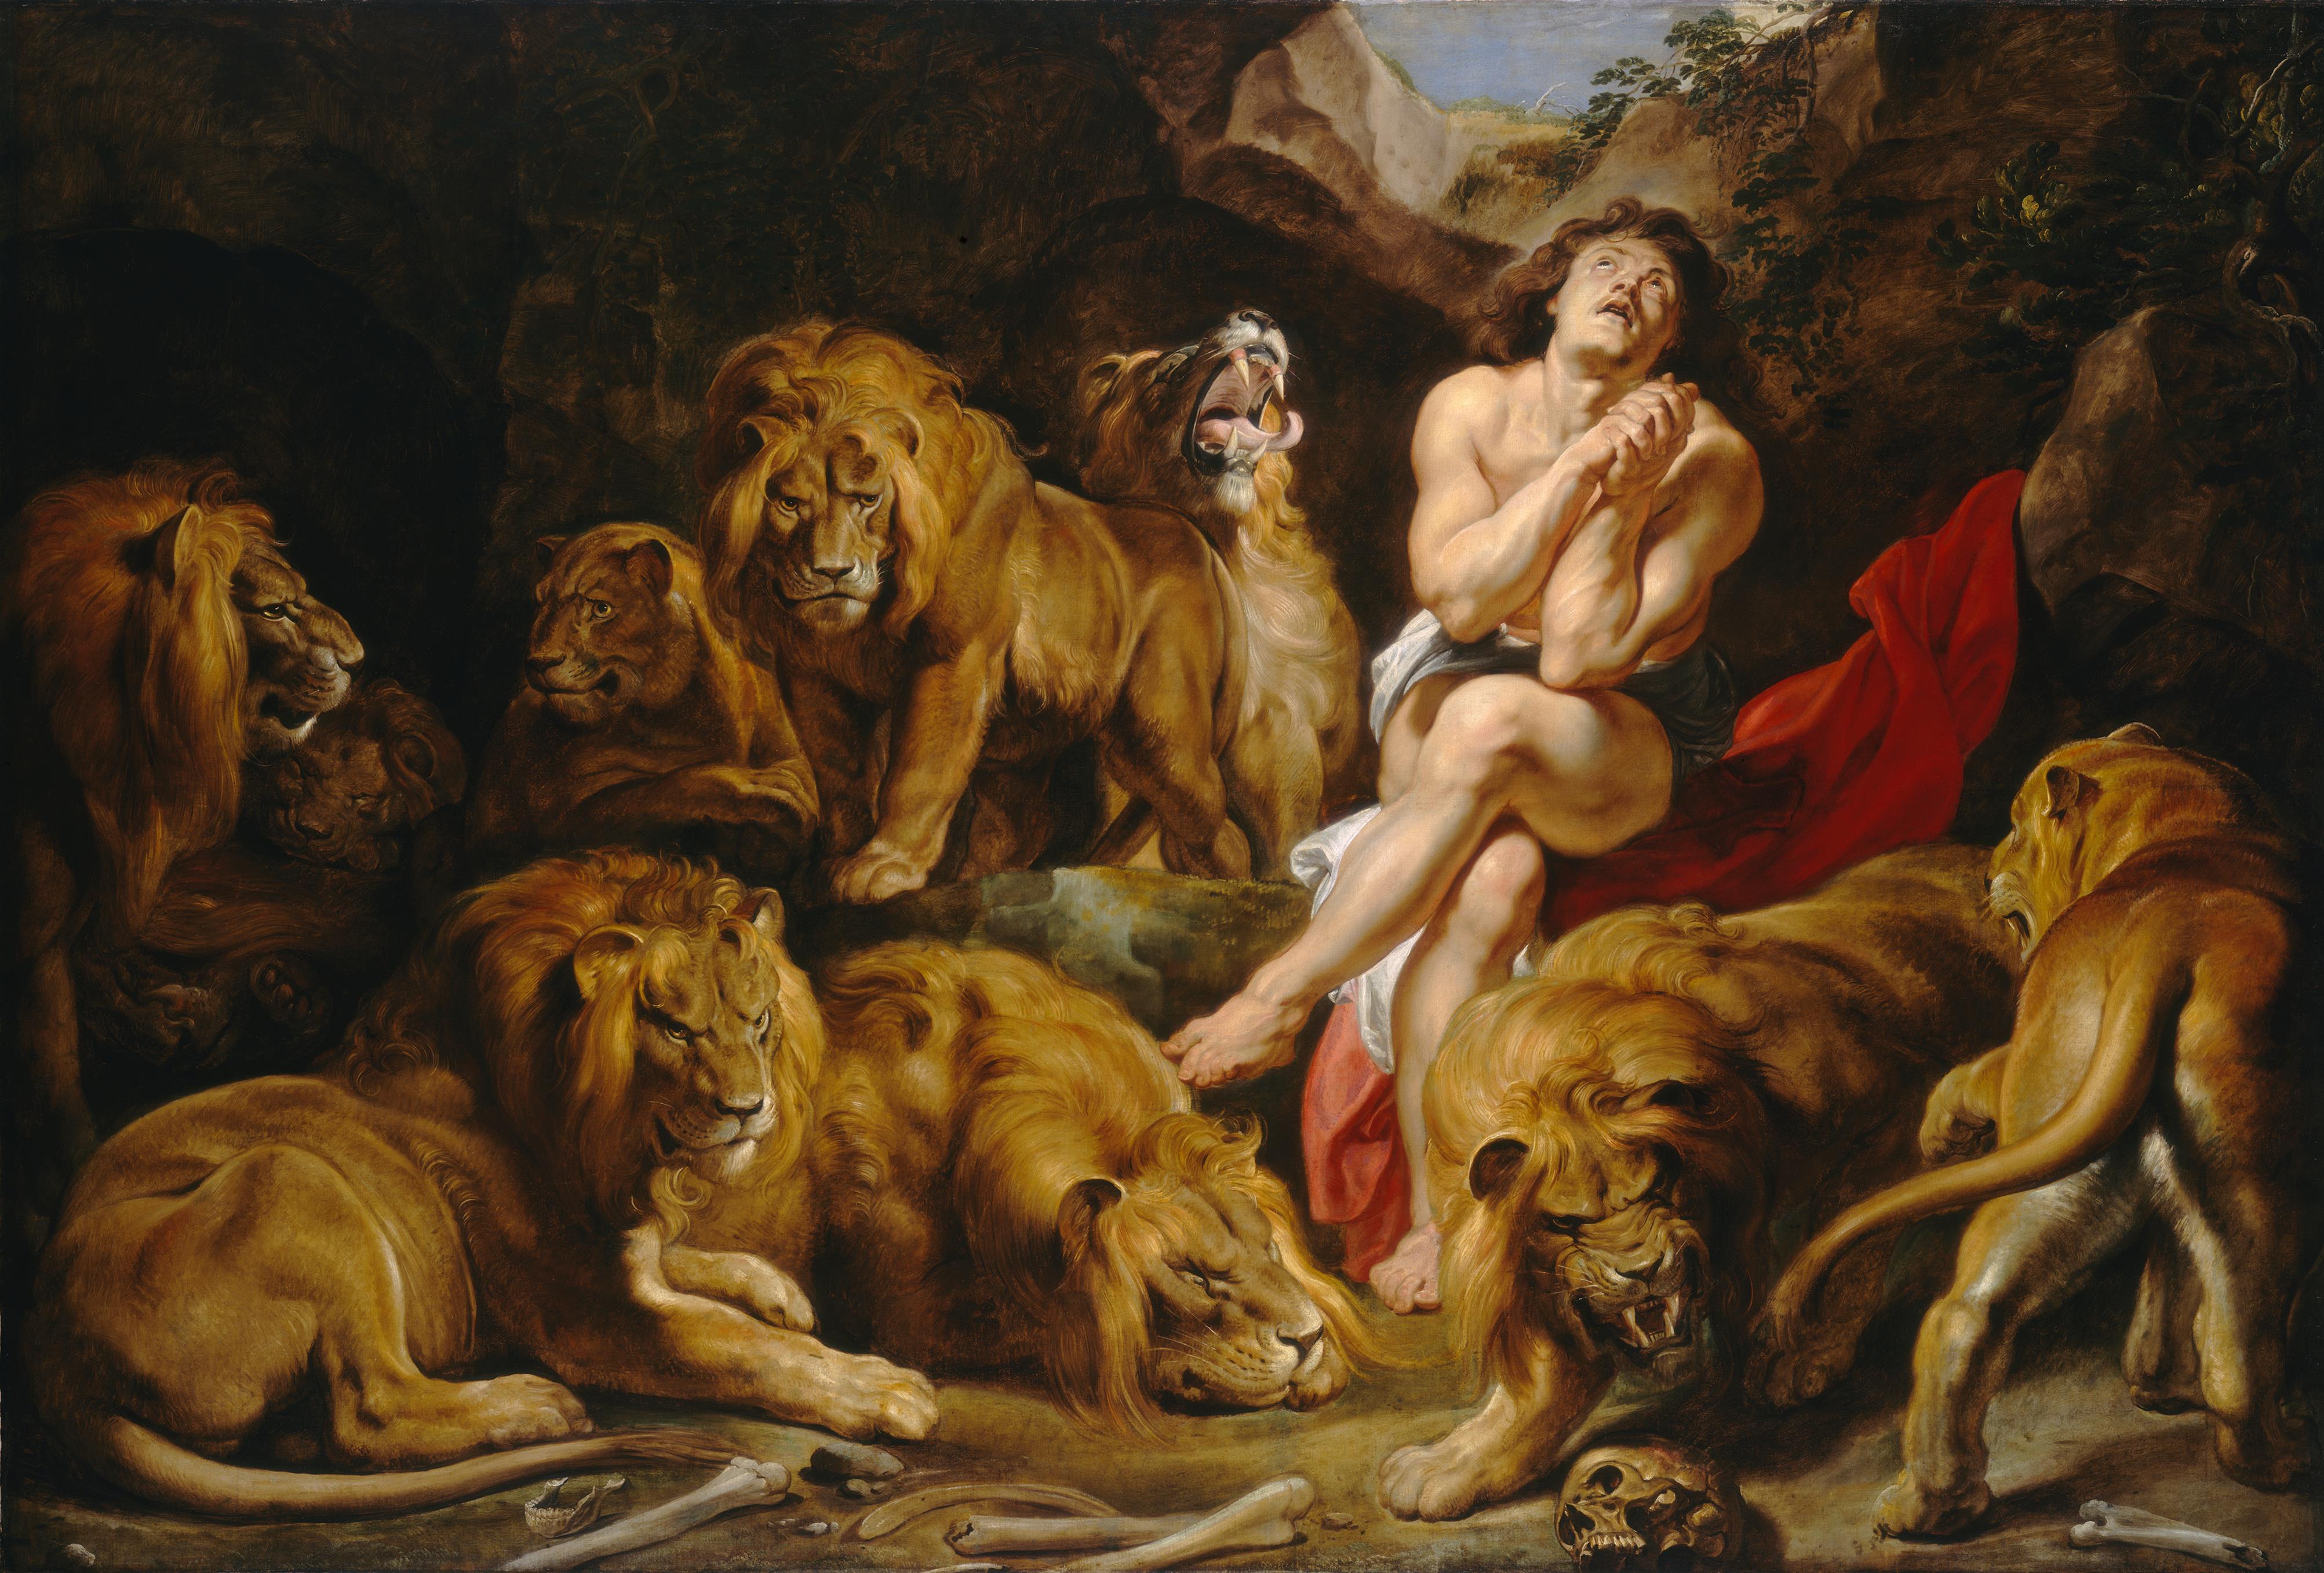 Rubens' daniel in the lion's den